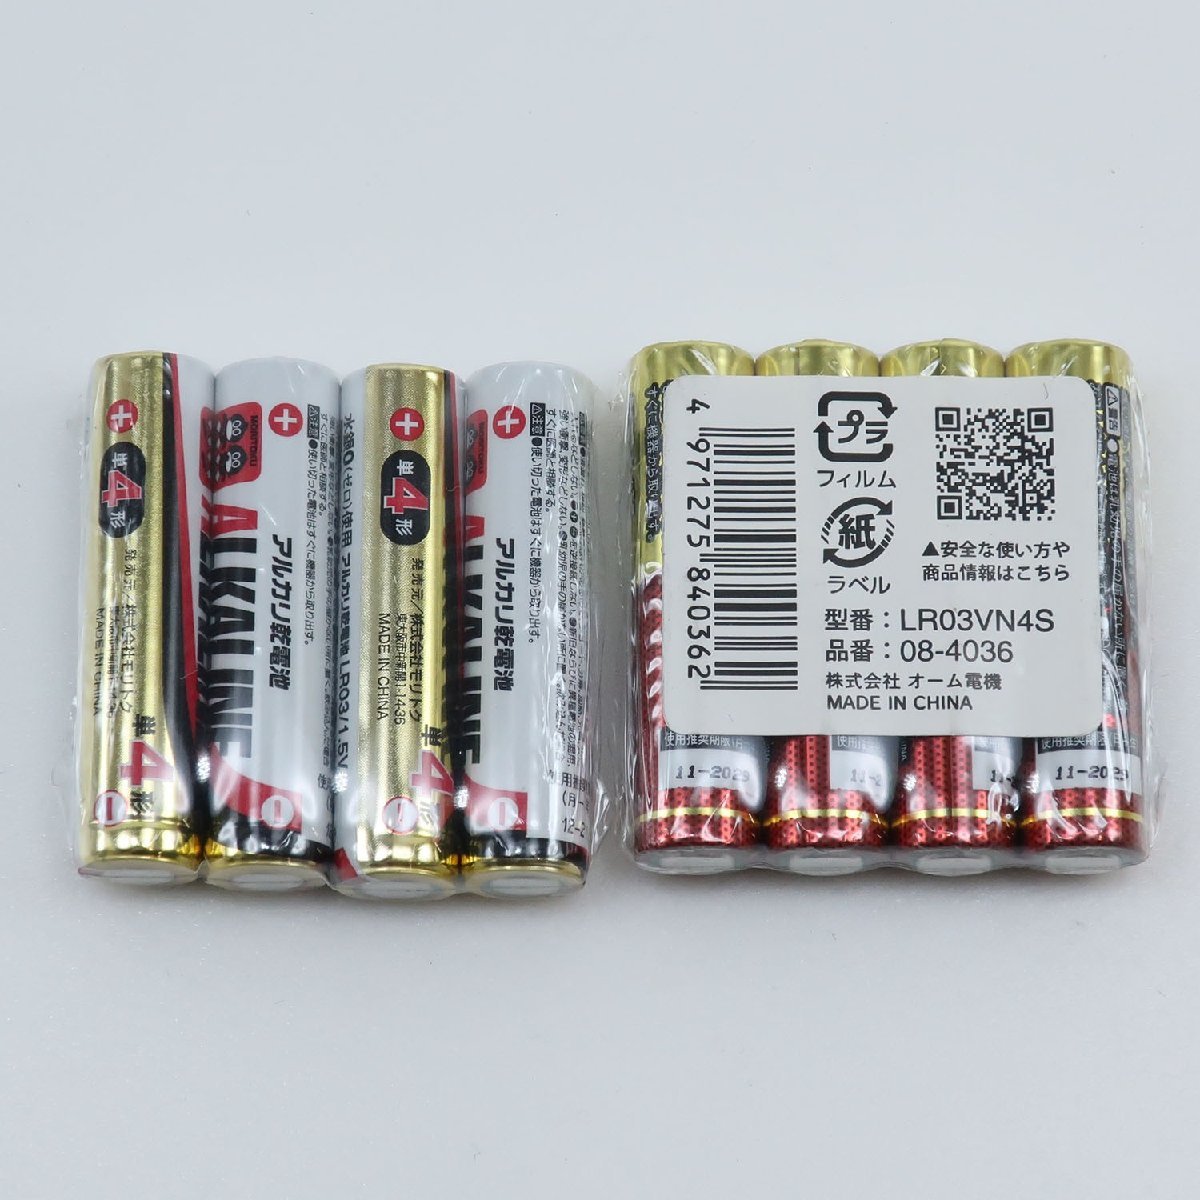  щелочь одиночный 4 батарейка 4 шт. входит .×25 итого 100шт.@ 1 шт. на 30 иен использование временные ограничения .. грудка 2029 год [Z162423005] не использовался 